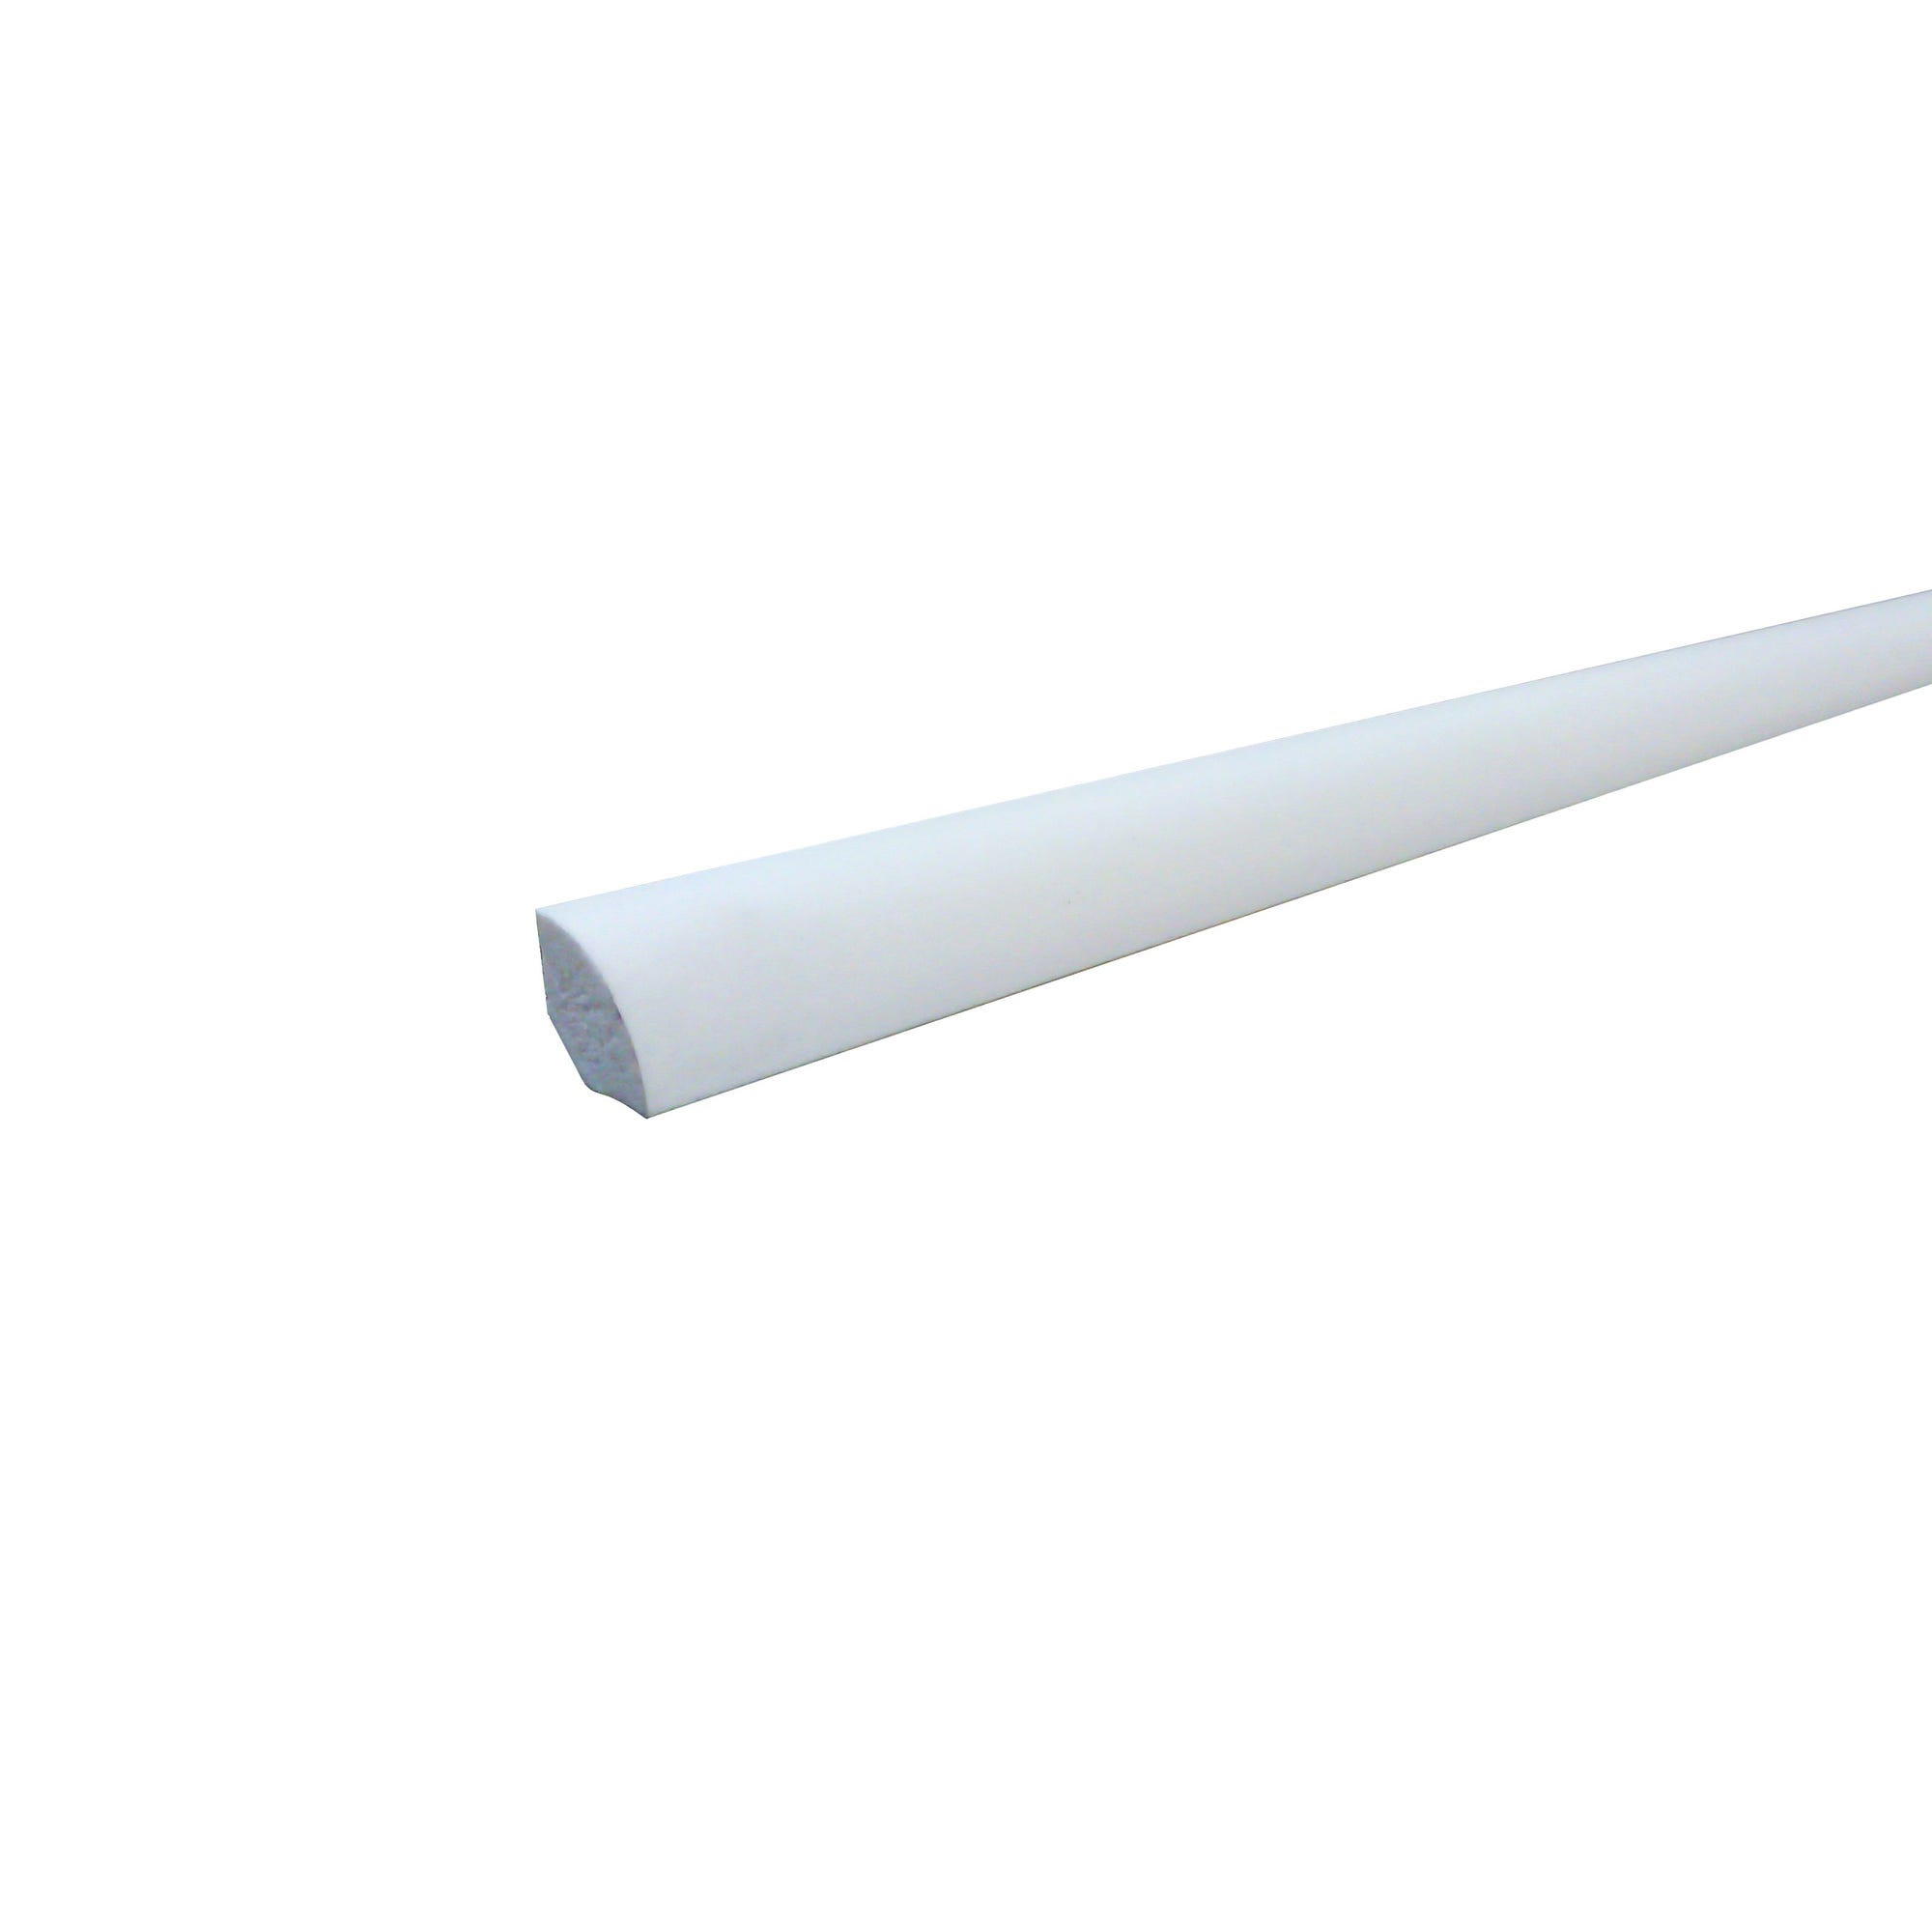 Quart de rond en PVC blanc 15 mm Long.2,6 m - SOTRINBOIS 0